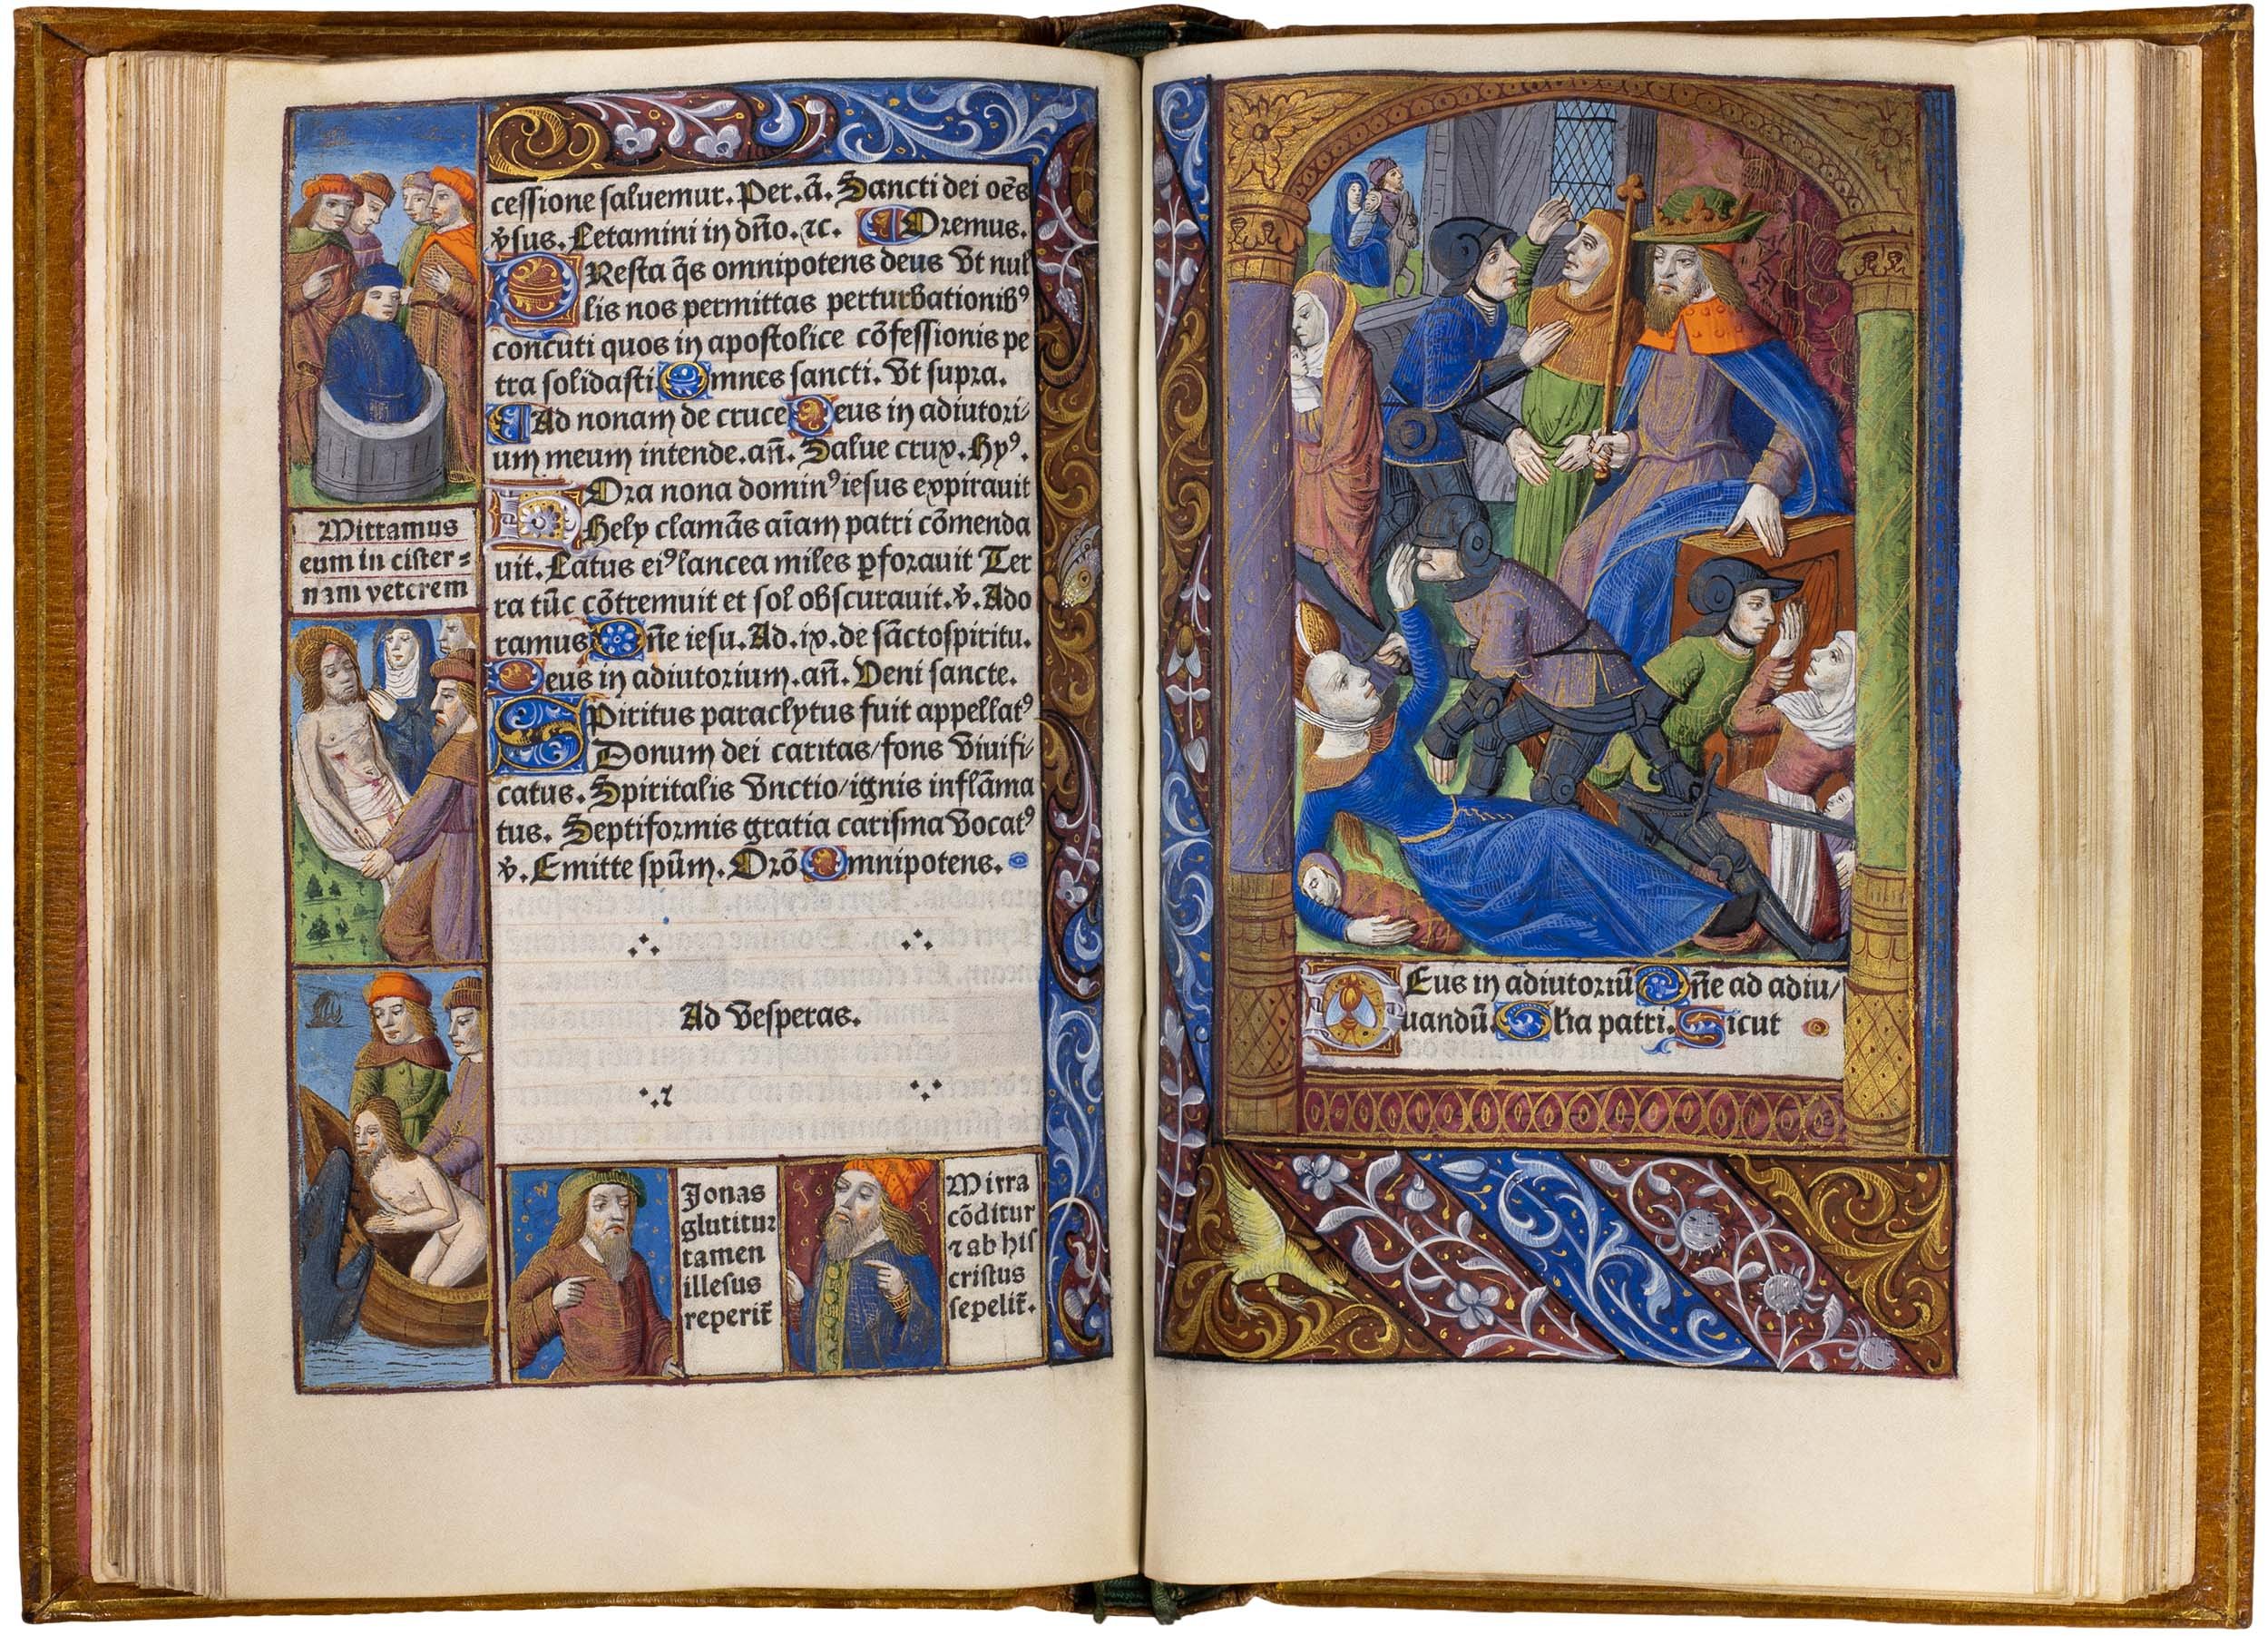 Horae-bmv-pigouchet-19-april-1494-pigouchet-robert-gaguin-illuminated-vellum-copy-42.jpg